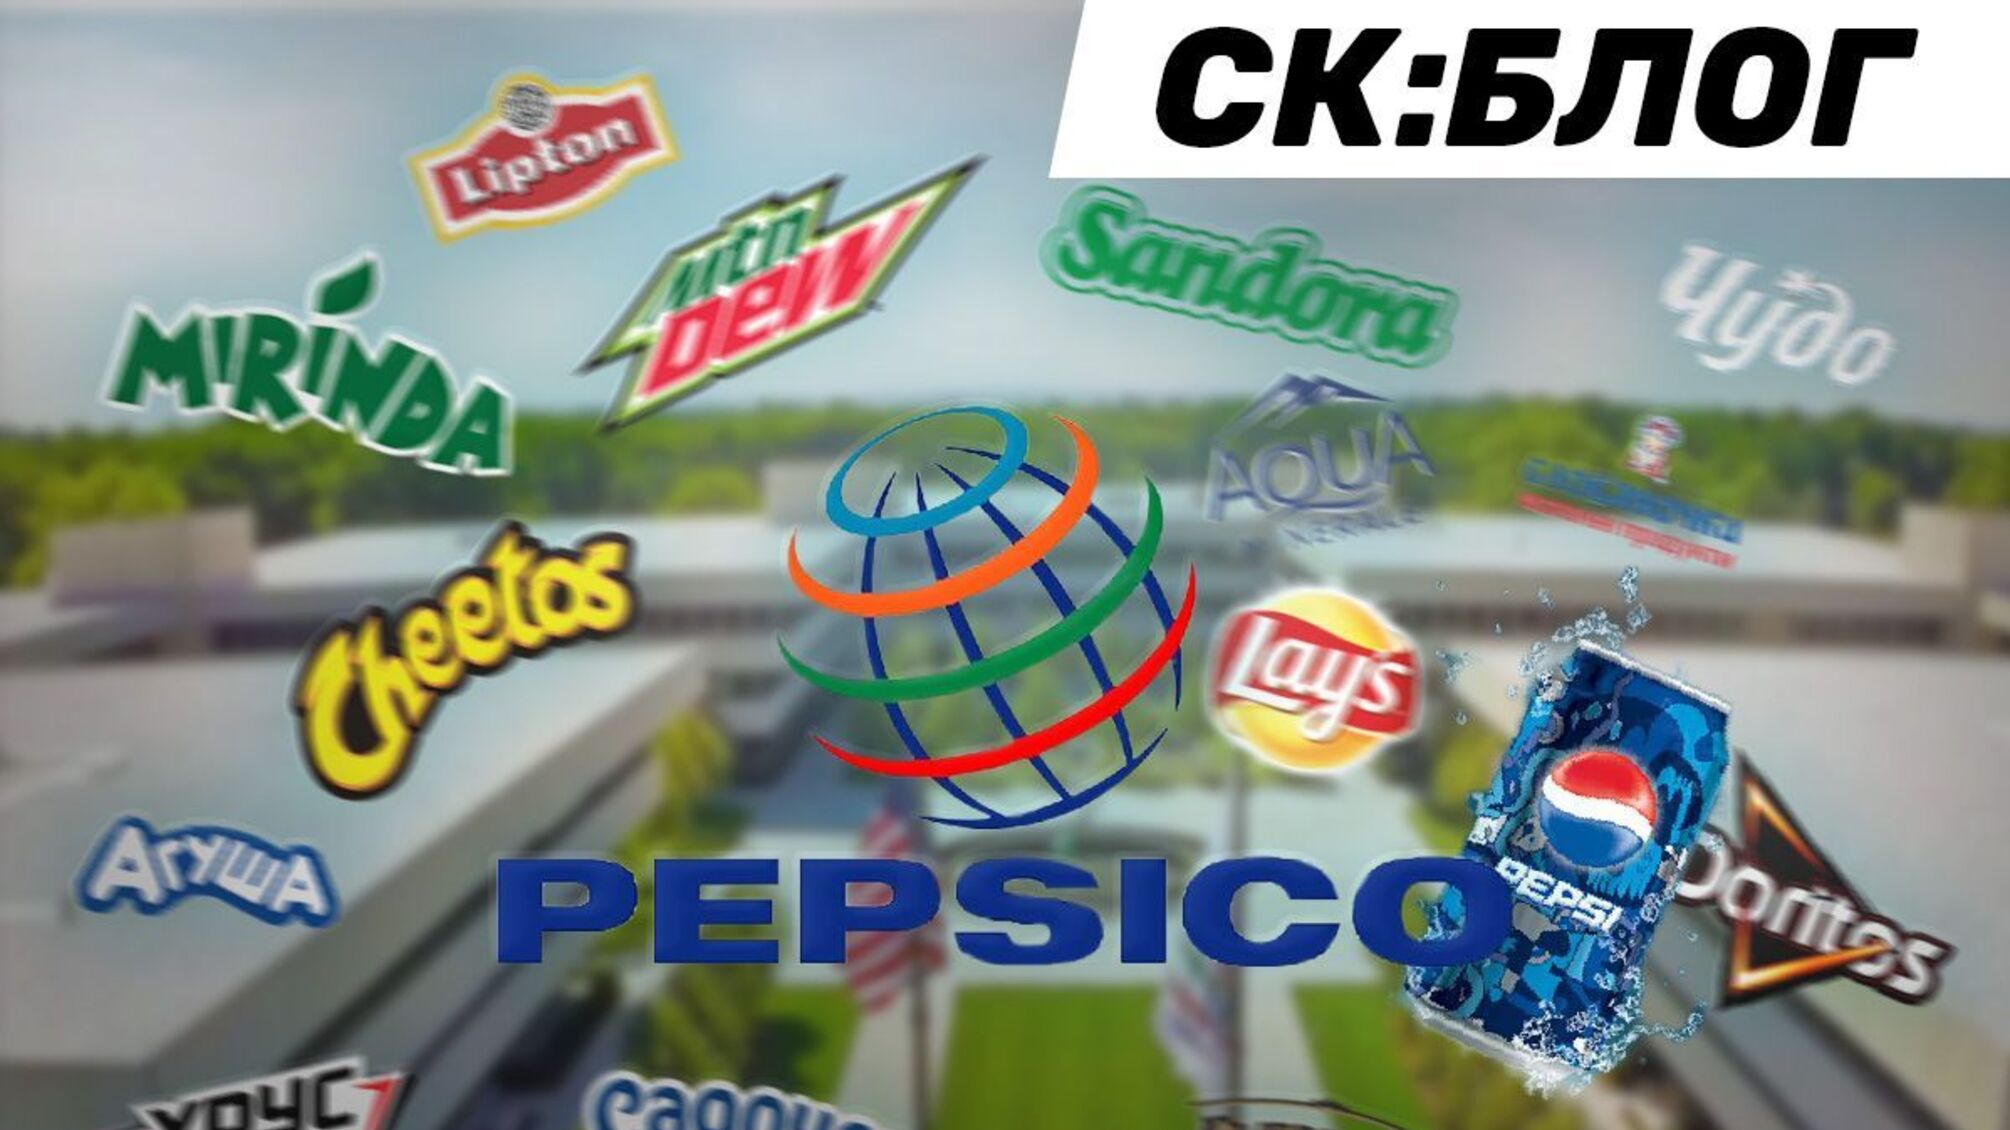 Компания PepsiCo попала в скандал из-за сознательного умалчивания российской агрессии?